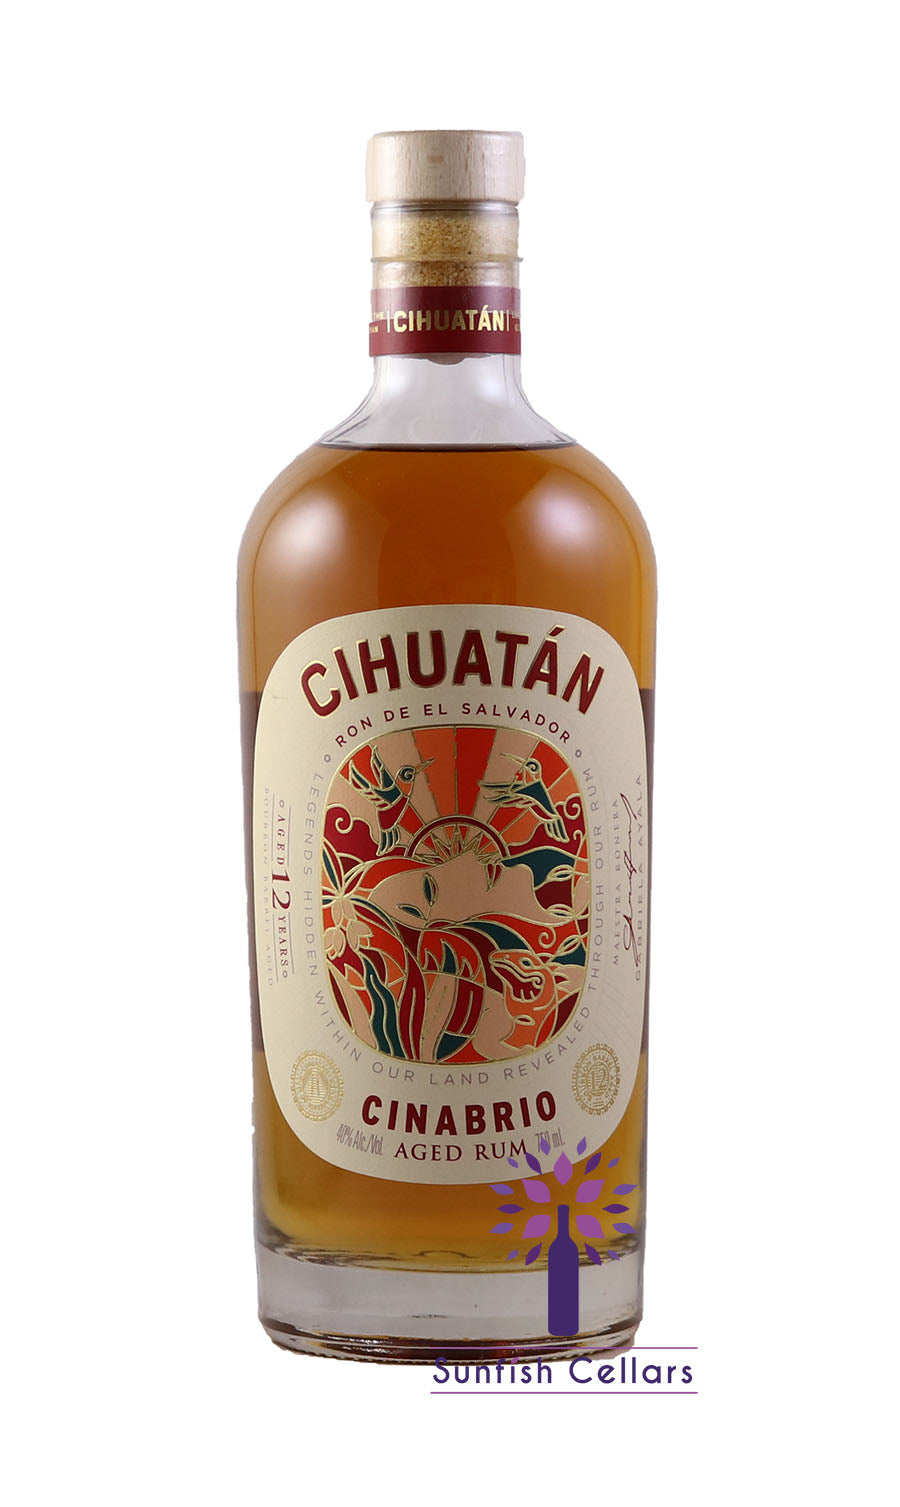 Cihuatan Rum Cinabrio 750ml